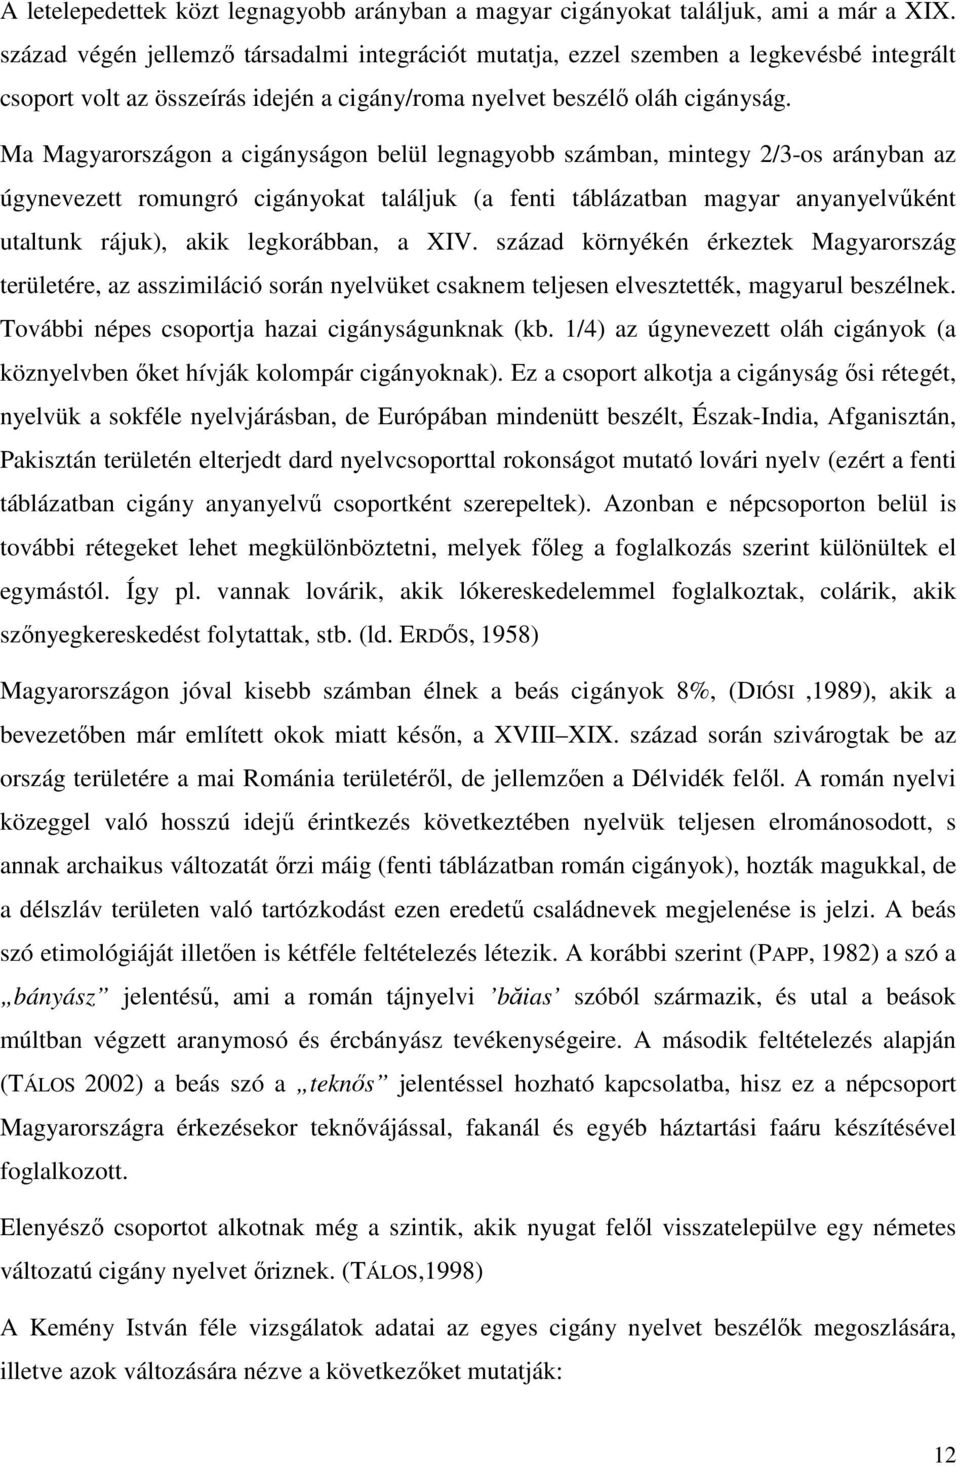 Ma Magyarországon a cigányságon belül legnagyobb számban, mintegy 2/3-os arányban az úgynevezett romungró cigányokat találjuk (a fenti táblázatban magyar anyanyelvűként utaltunk rájuk), akik